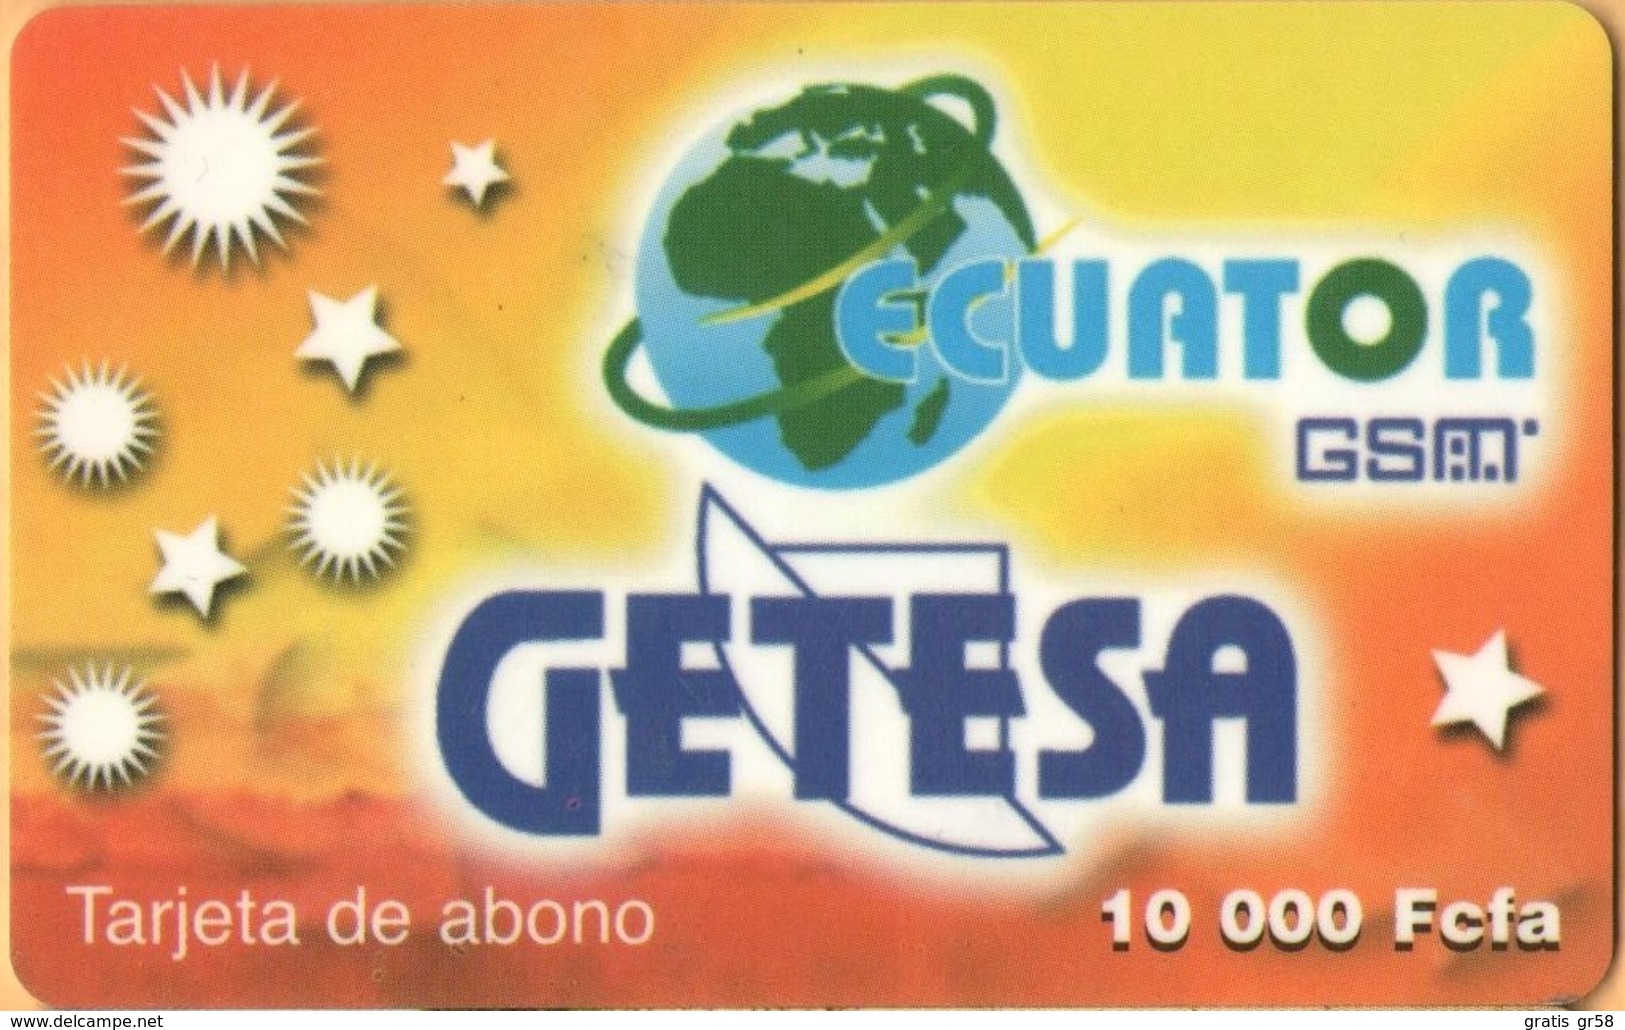 Equatorial Guinea - GQ-GET-REF-0004, GSM, Mobile Refill, Yellow – Getesa, Used - Guinée-Equatoriale